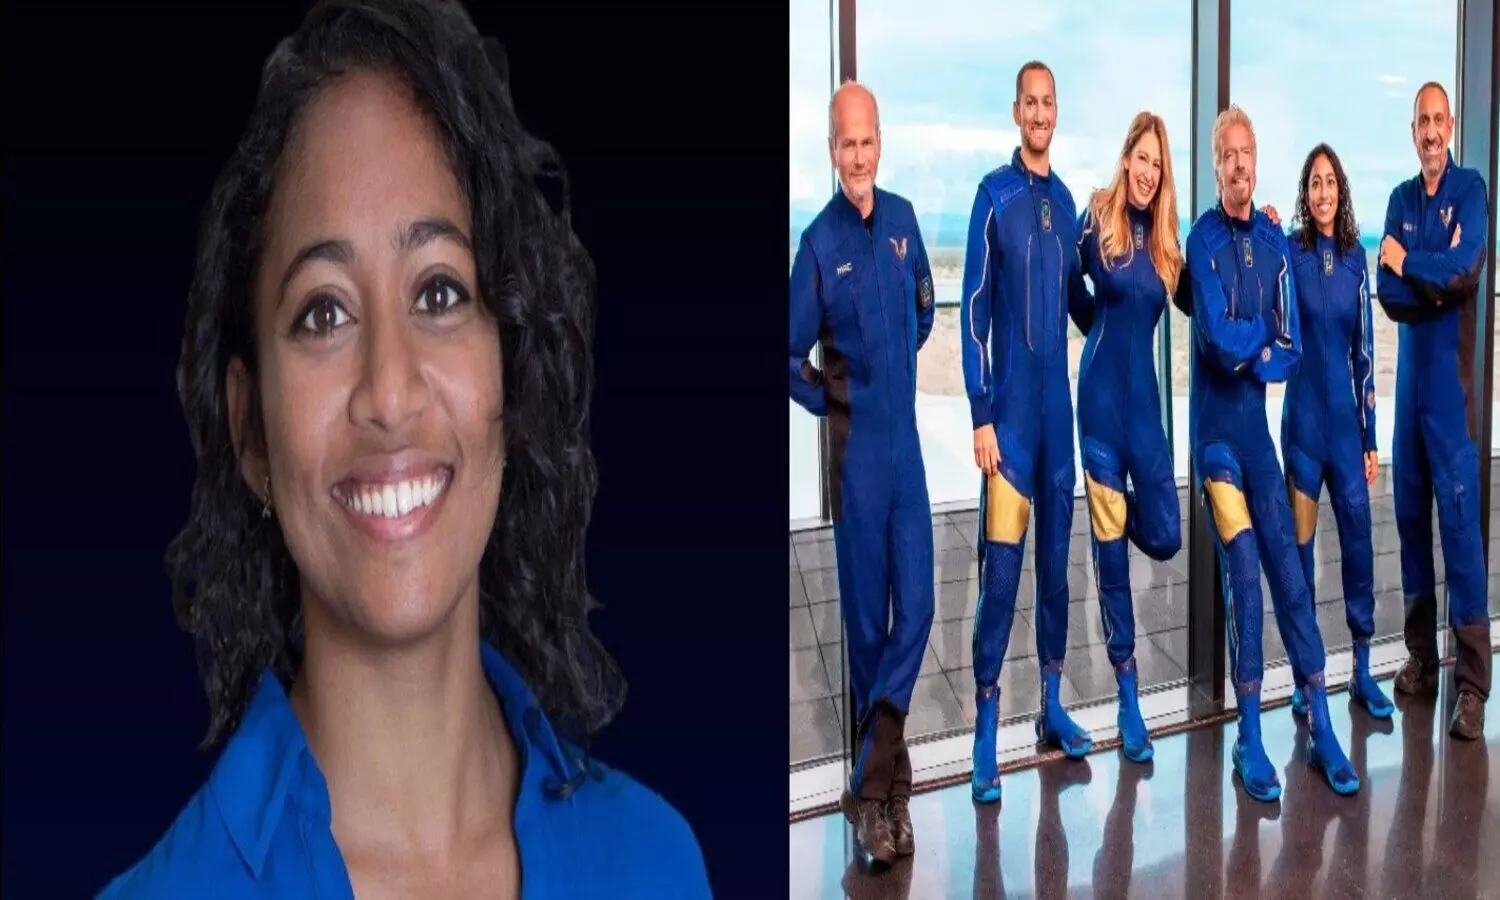 Sirisha Bandla returned from space trip